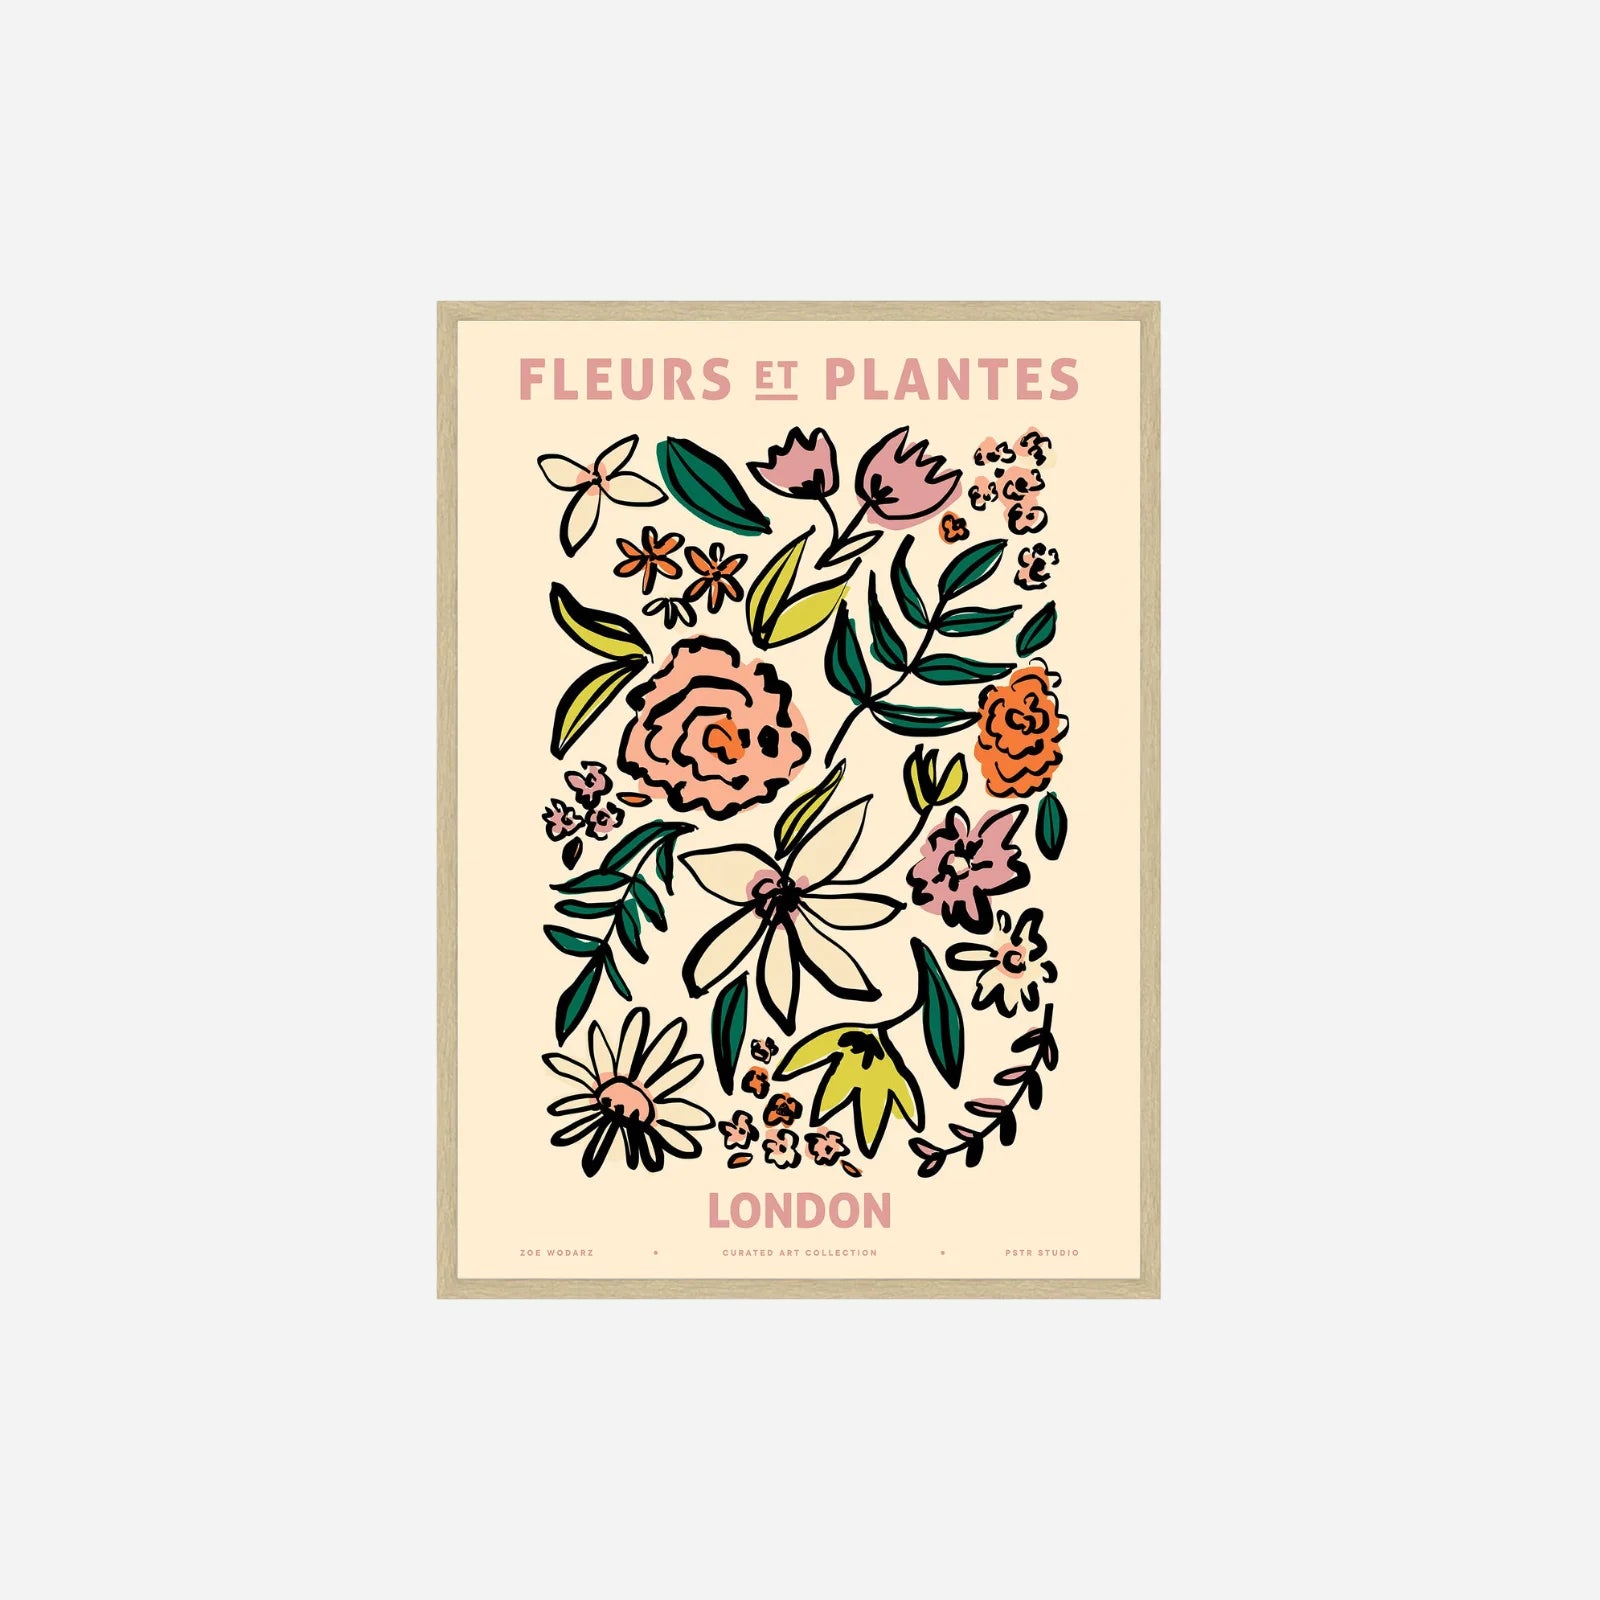 Fleur et Plantes London plakat fra Poster & Frame